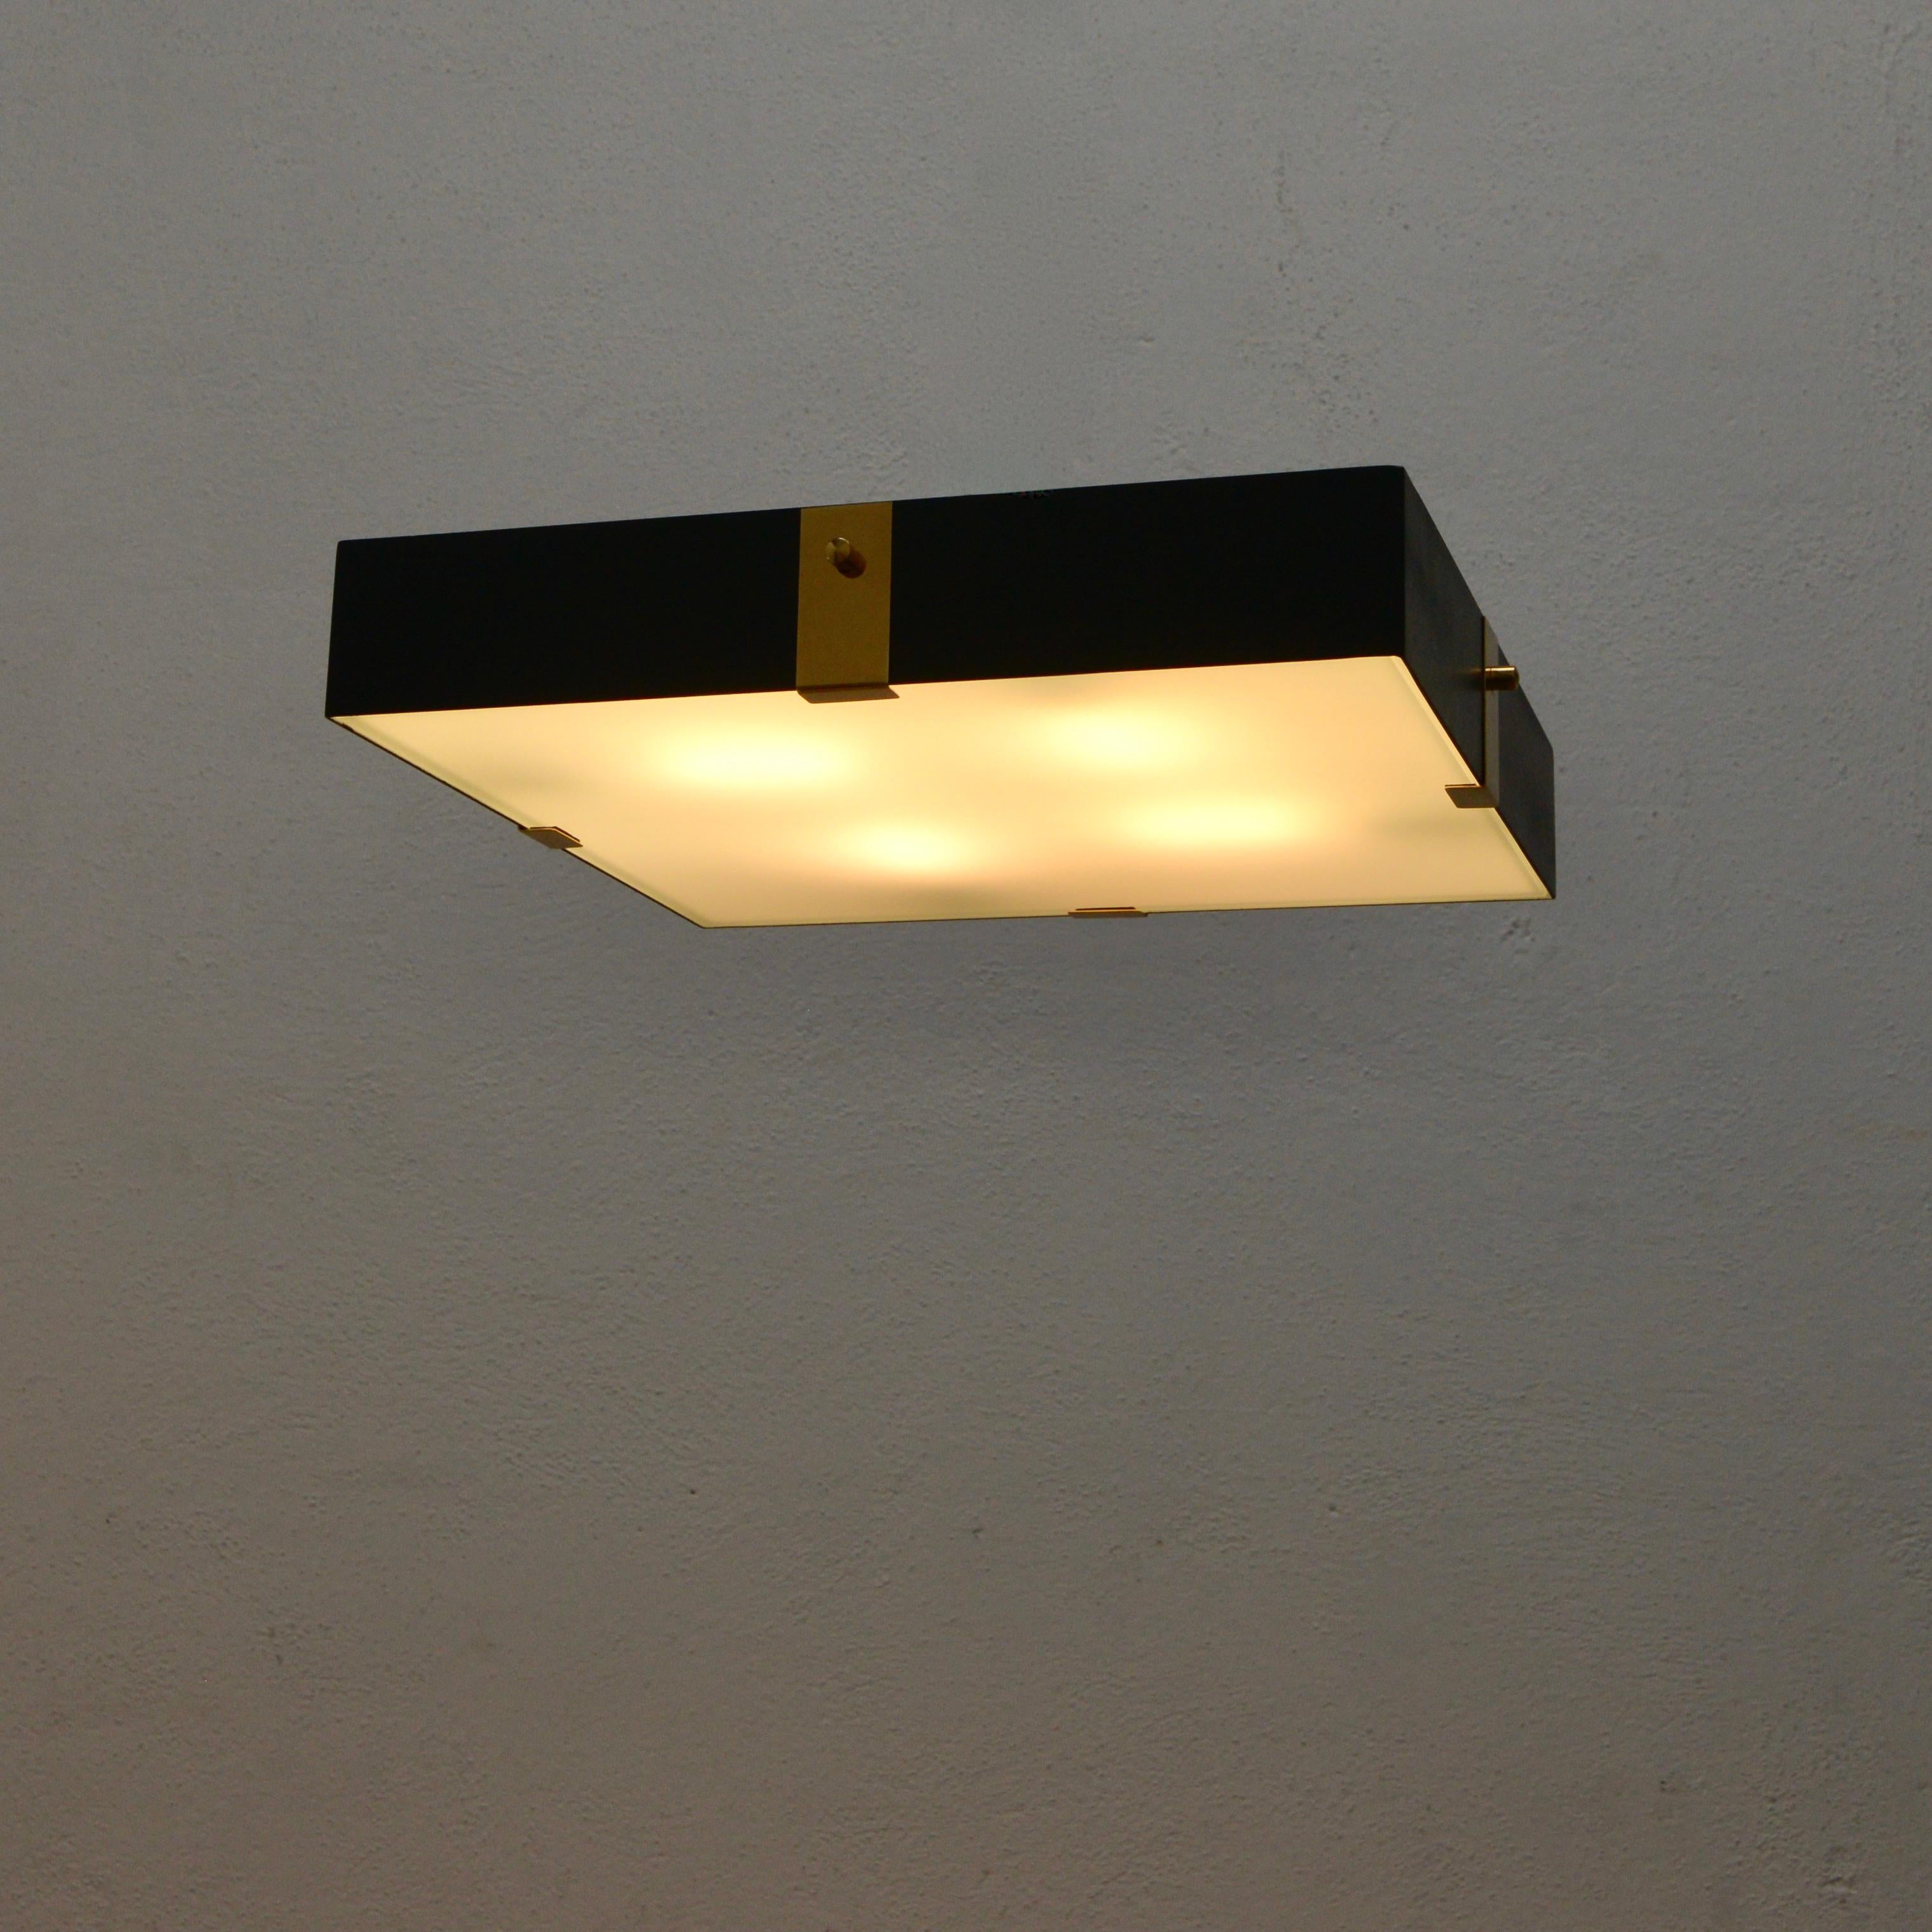 Faisant partie de la collection Contemporary de Lumfardo Luminaires, le luminaire encastré LUsquare est fabriqué sur commande. Multiples disponibles. Le luminaire est fabriqué en acier peint, en laiton et en verre. Le luminaire est équipé de quatre